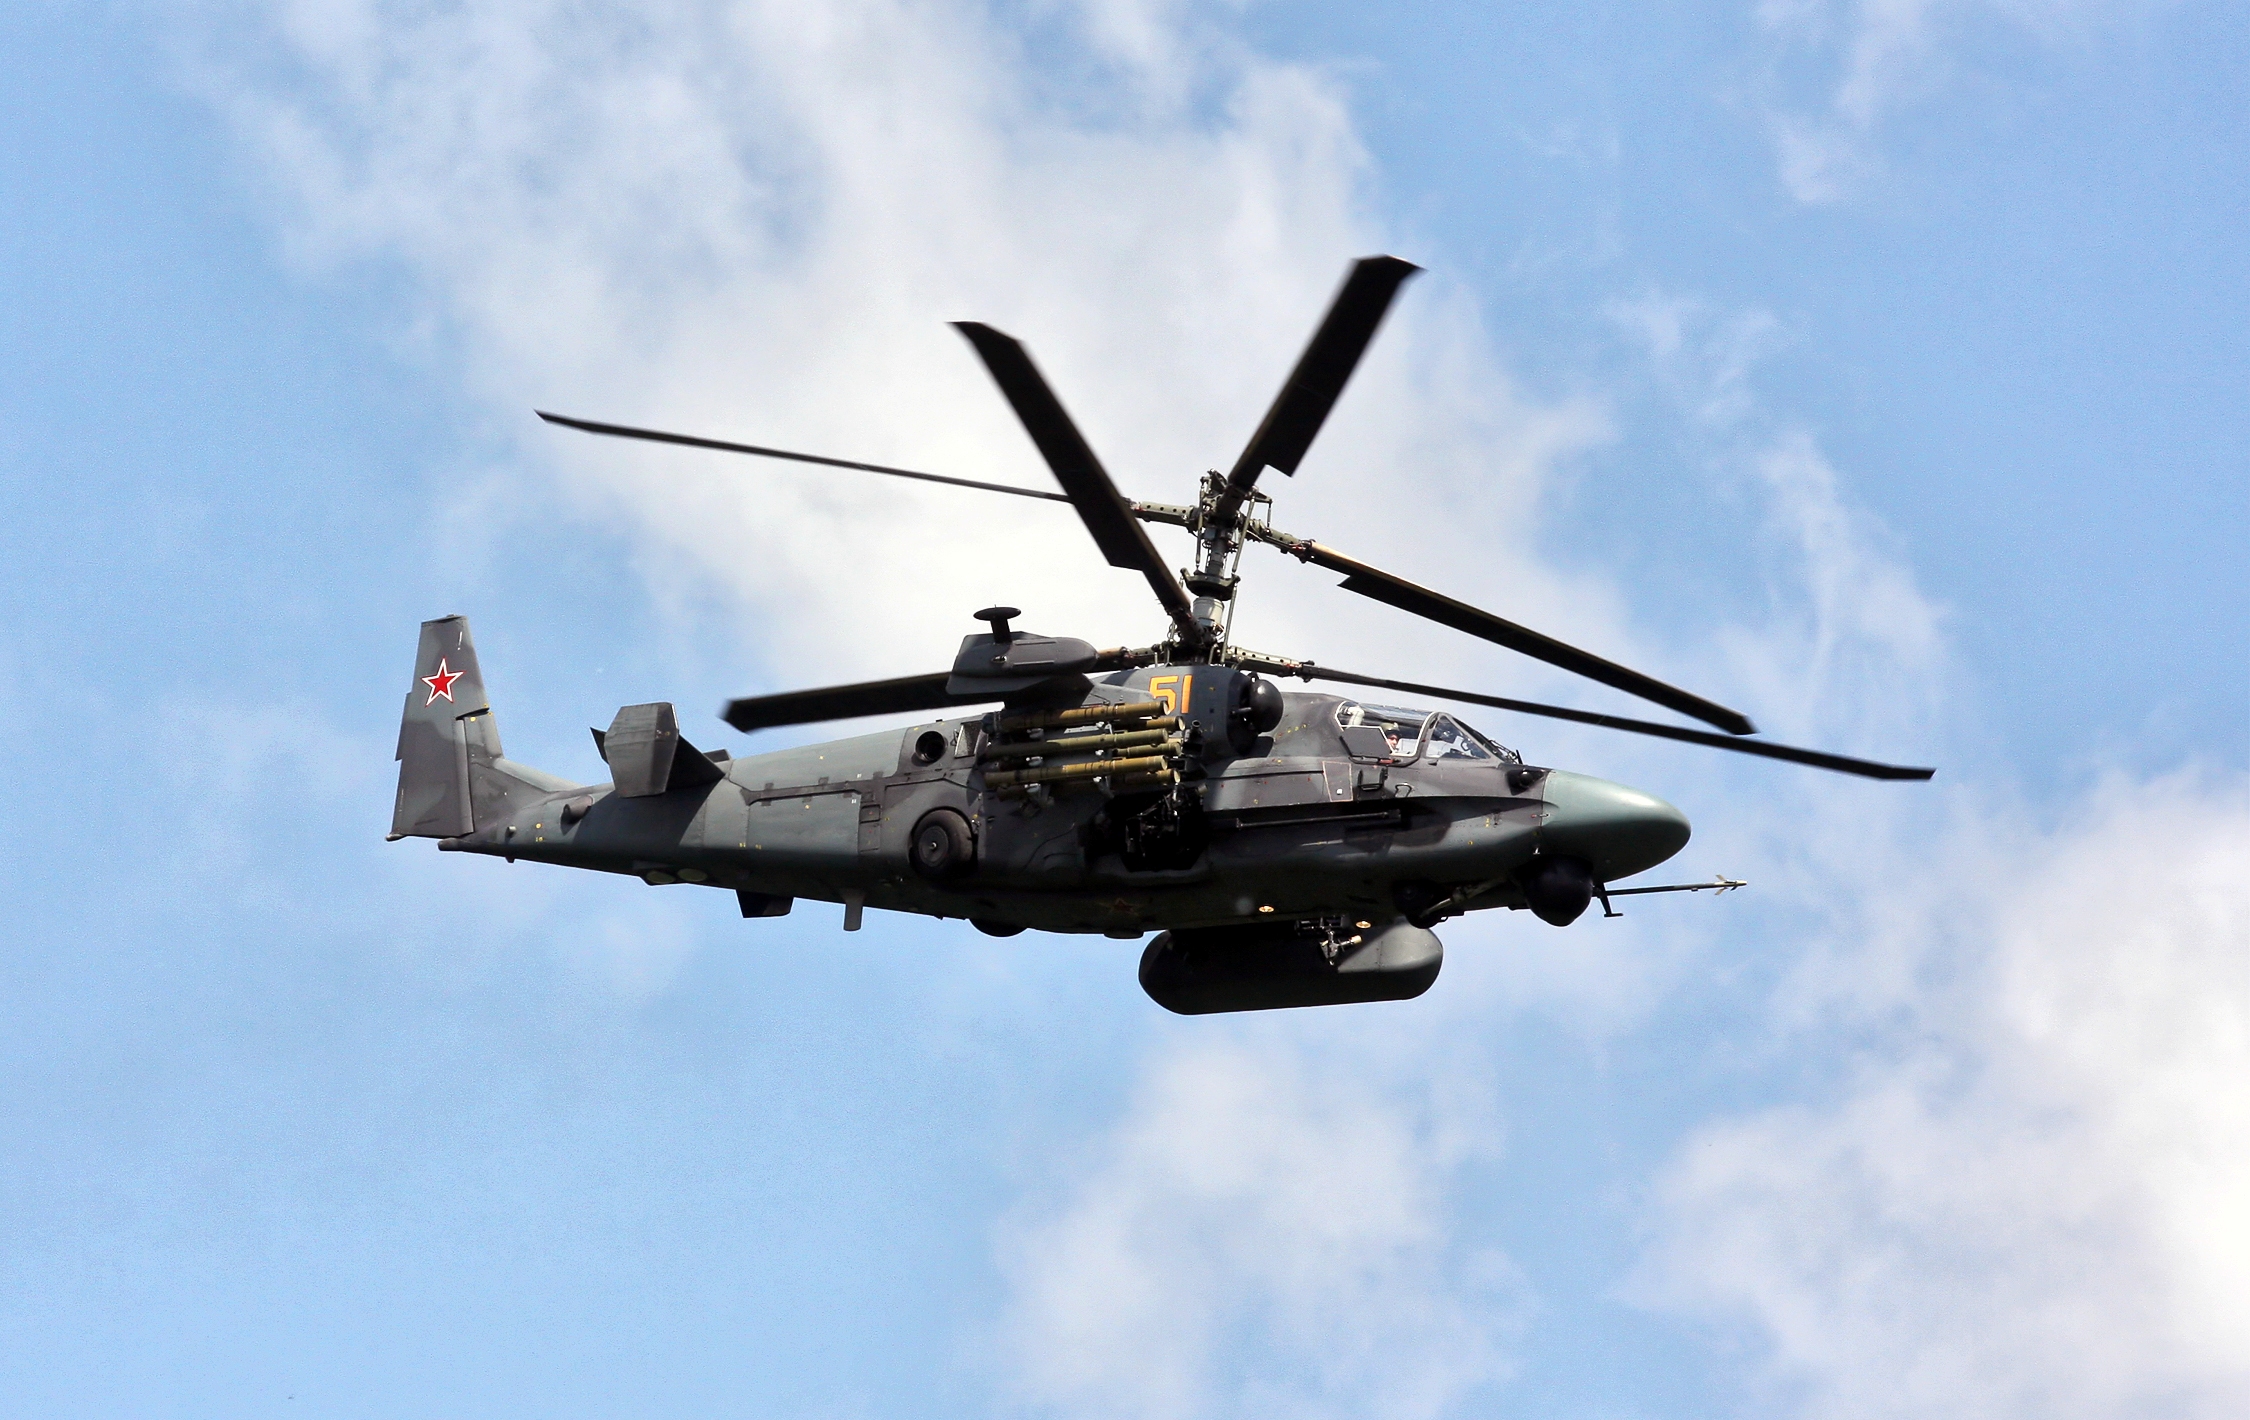 De AFU liet zien hoe ze een Russische Ka-52 Alligator gevechtshelikopter neerschoten met behulp van RBS 70 draagbare luchtverdedigingssystemen.